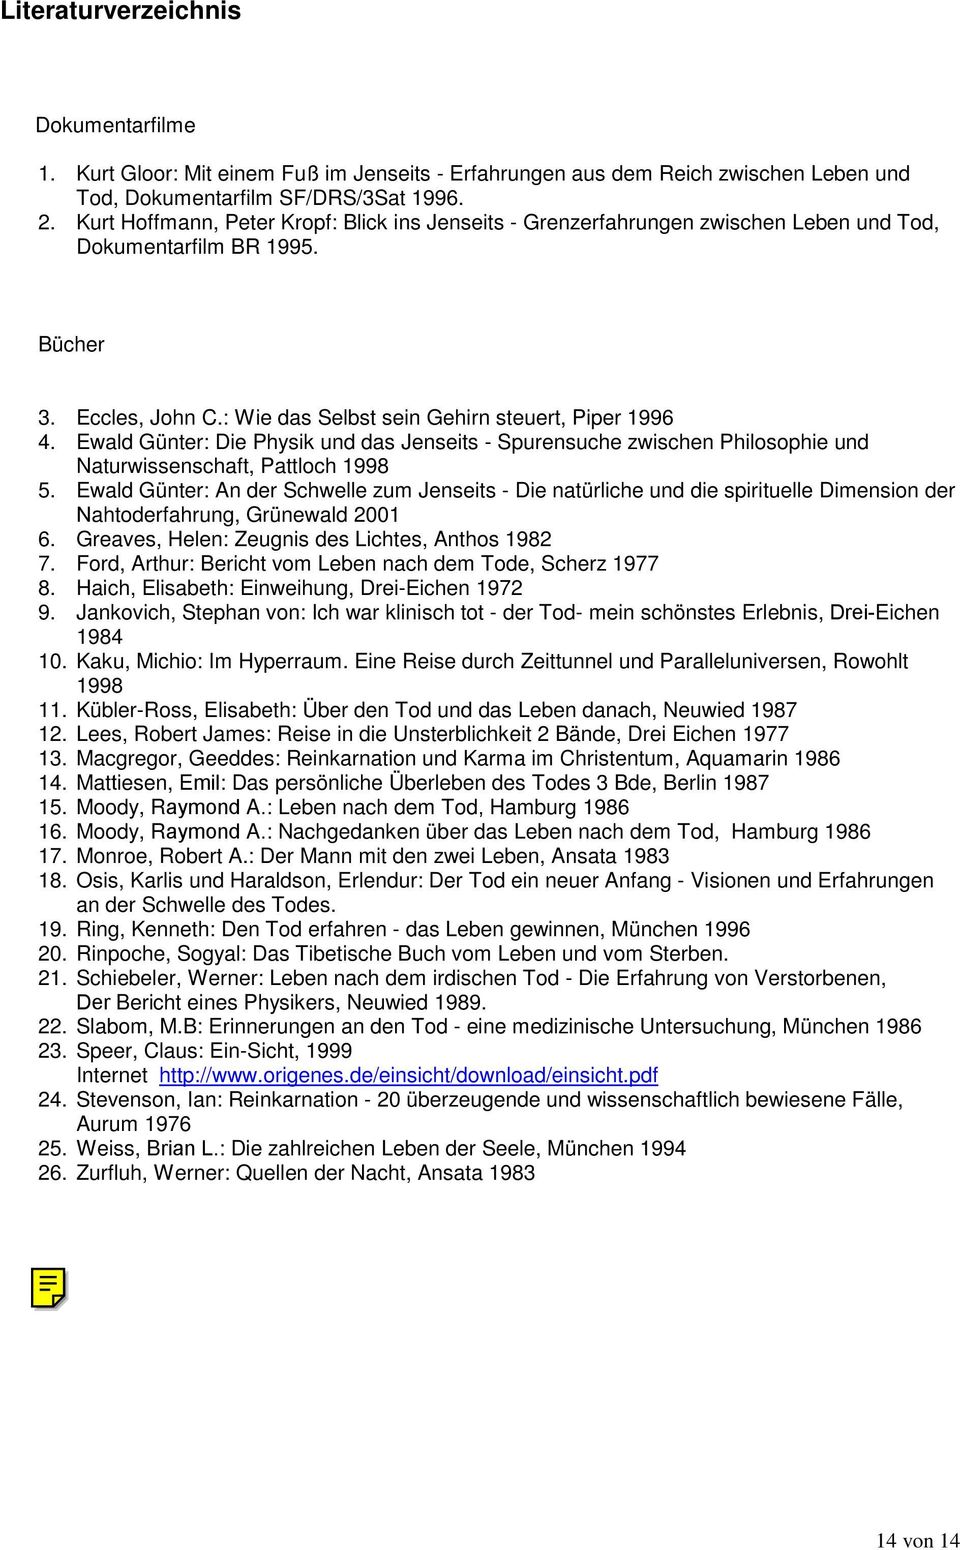 Ewald Günter: Die Physik und das Jenseits - Spurensuche zwischen Philosophie und Naturwissenschaft, Pattloch 1998 5.